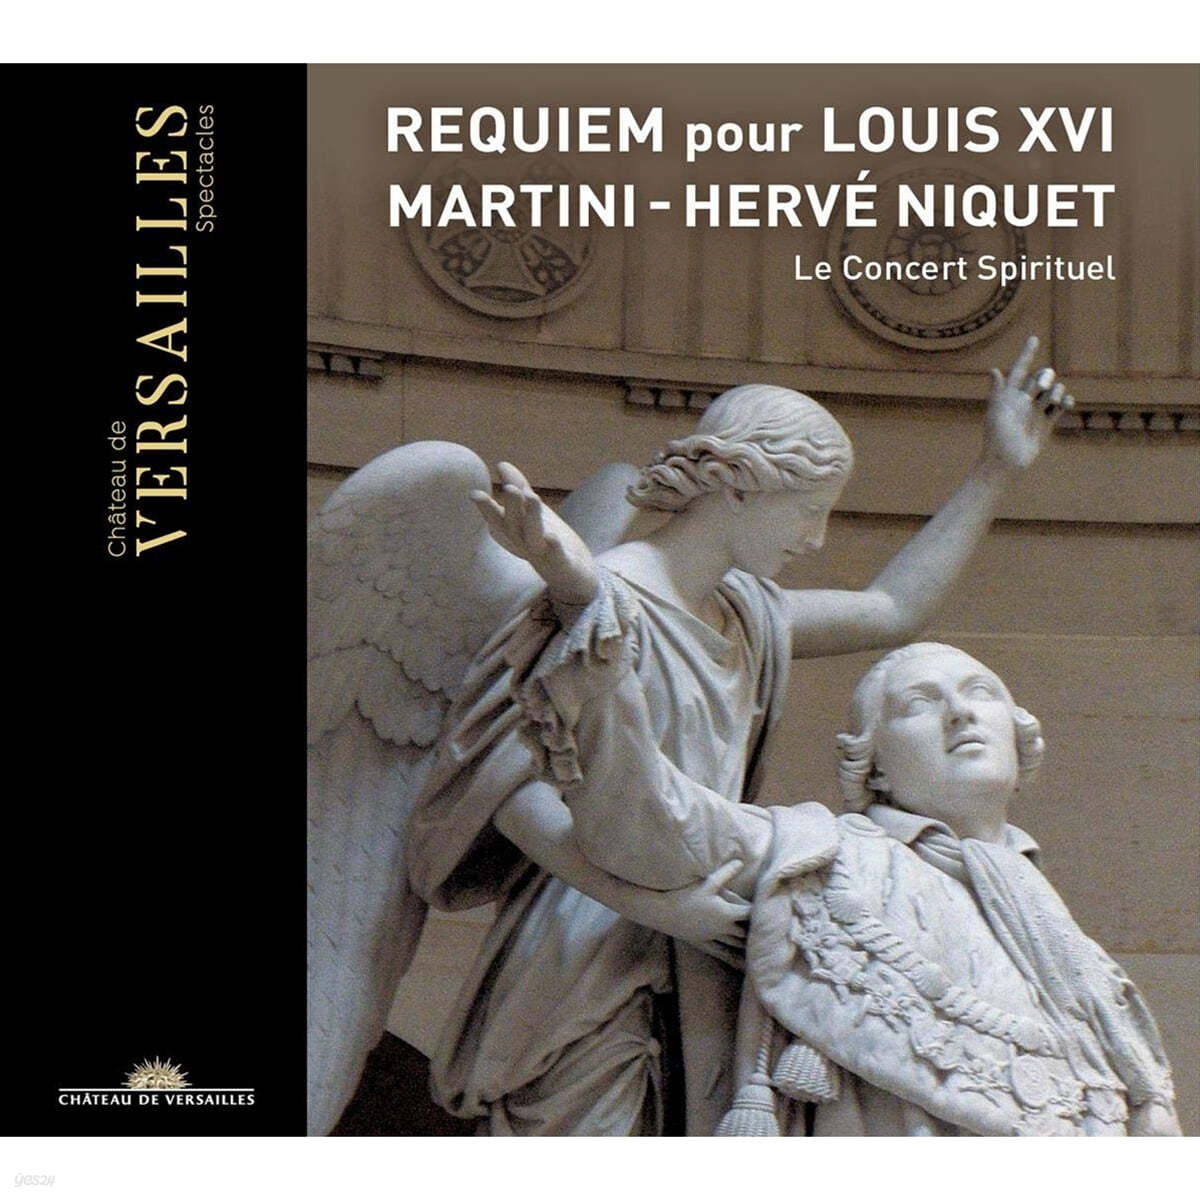 Le Concert Spirituel 장-폴-에지드 마르티니: 루이 16세를 위한 레퀴엠 (Jean-Paul-Egide Martini: Requiem pour Louis XVI)